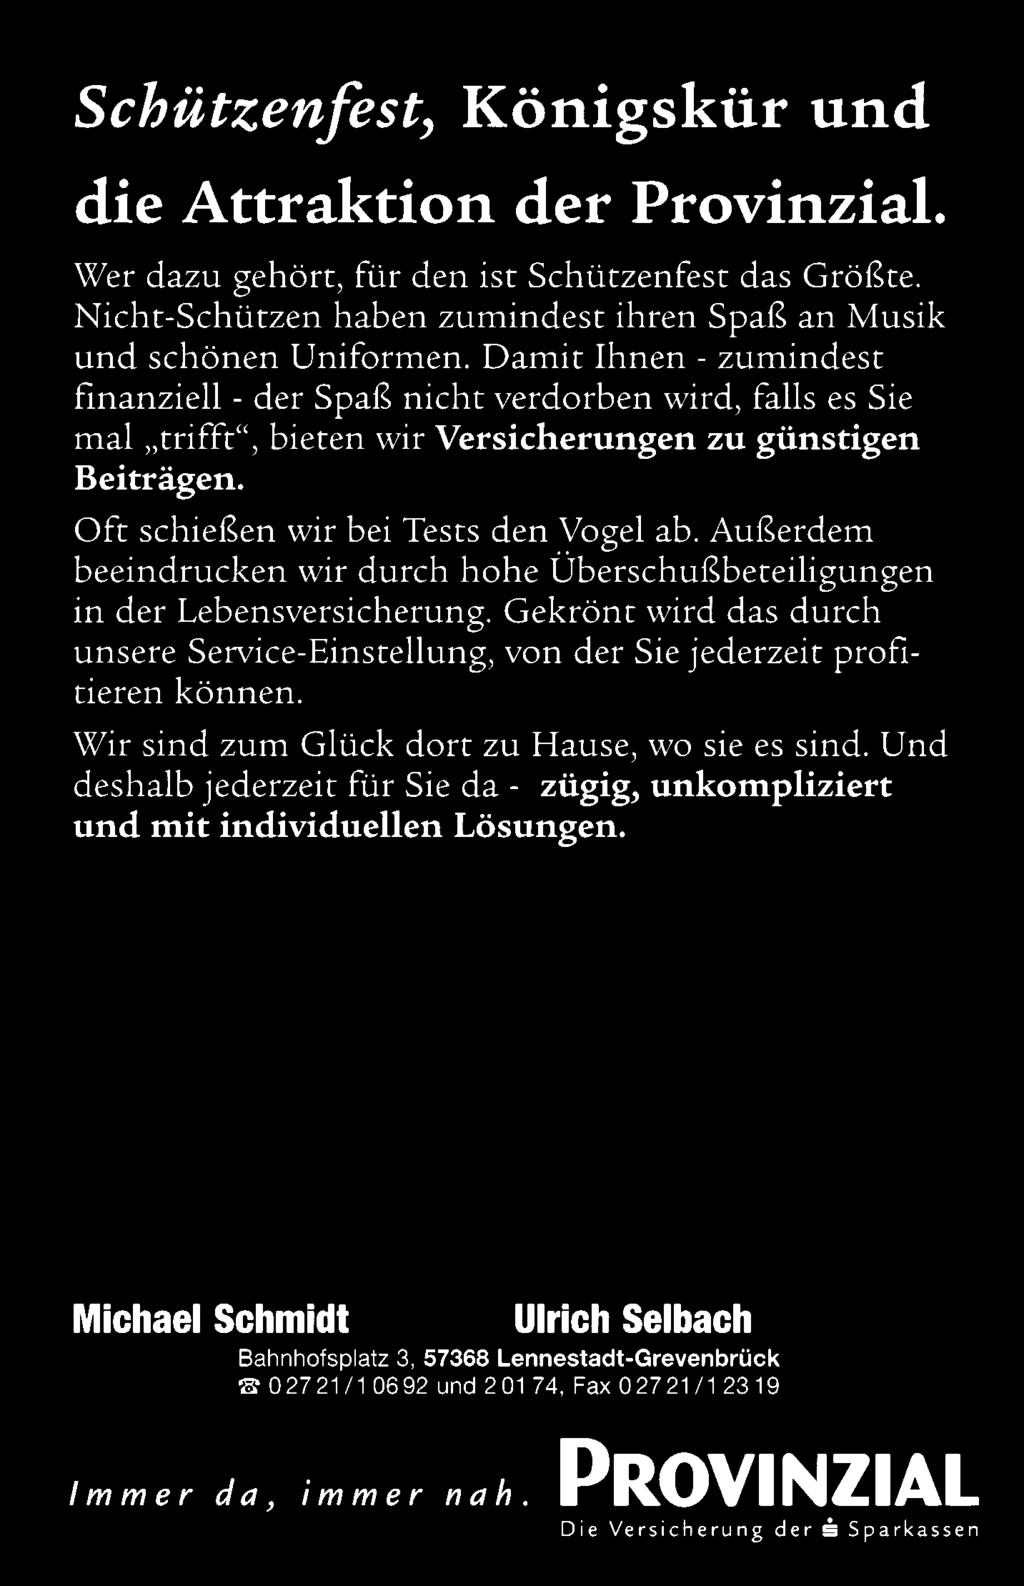 Seite 6 SCHÜTZENFEST GREVENBRÜCK 9. Juni 1999 Wir wünschen allen Grevenbrückern schöne Schützenfesttage. Wir bieten das Besondere Fleisch und Wurst aus dem Sauerland Grevenbrück Tel.